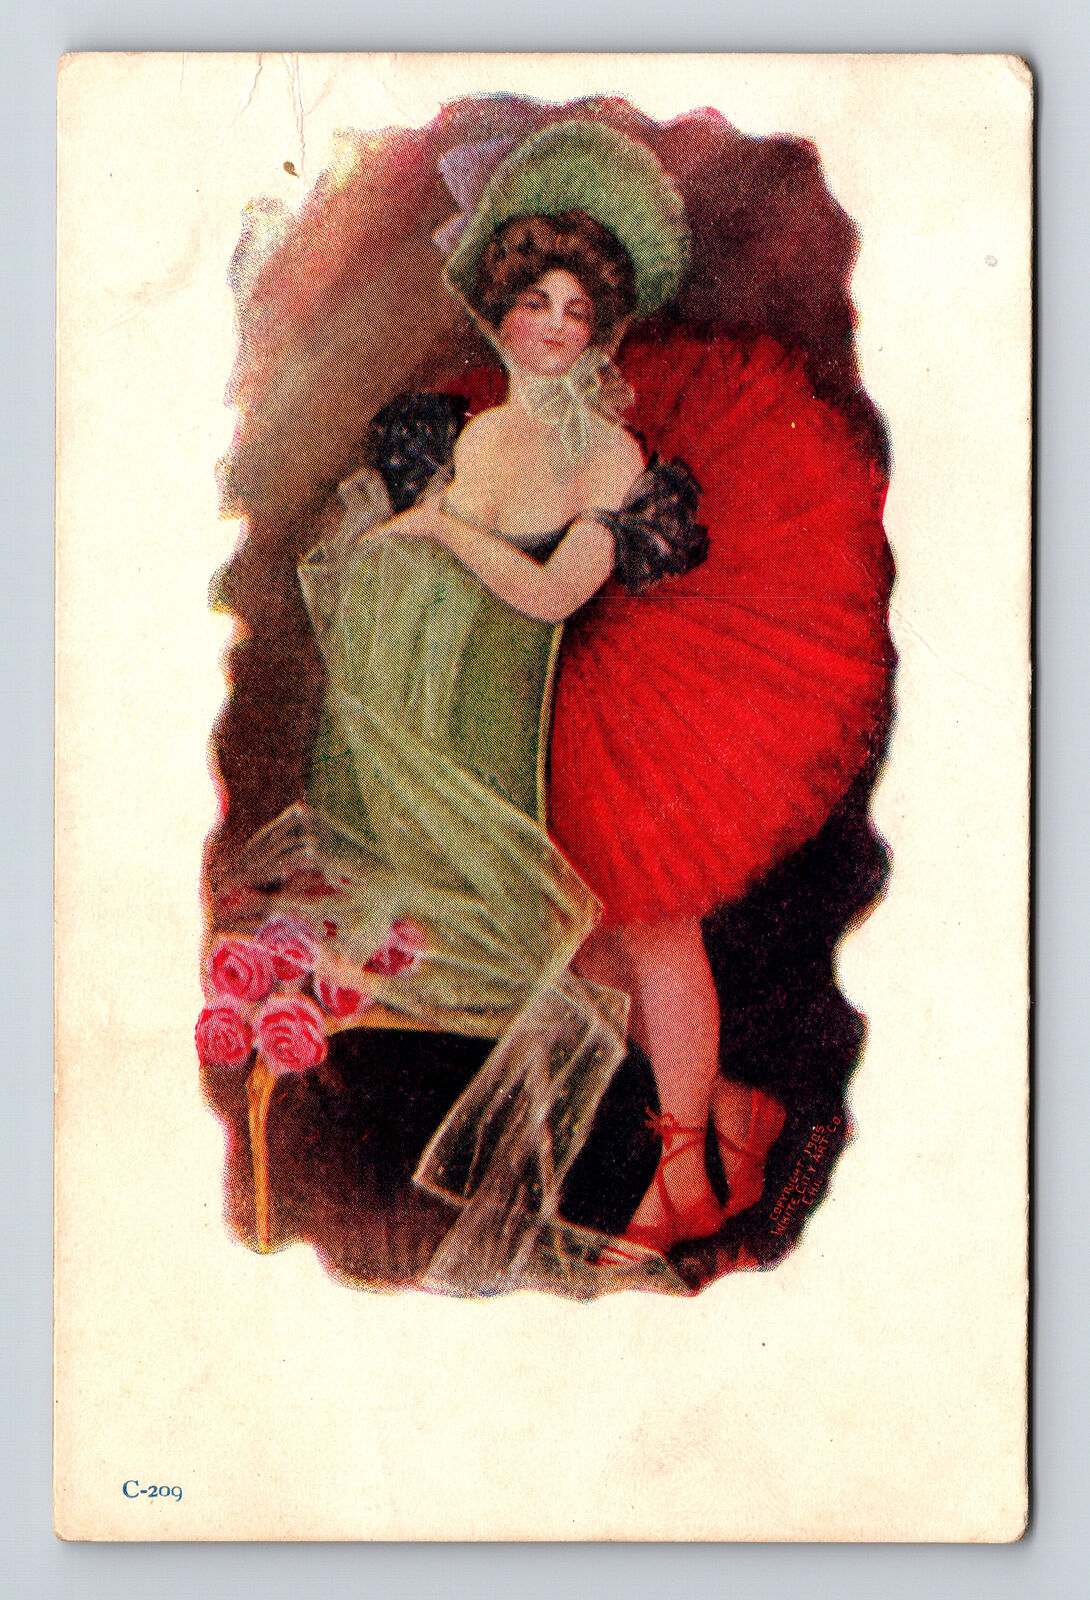 1905 White City Art Co Saloon Girl Dancer Woman Postcard